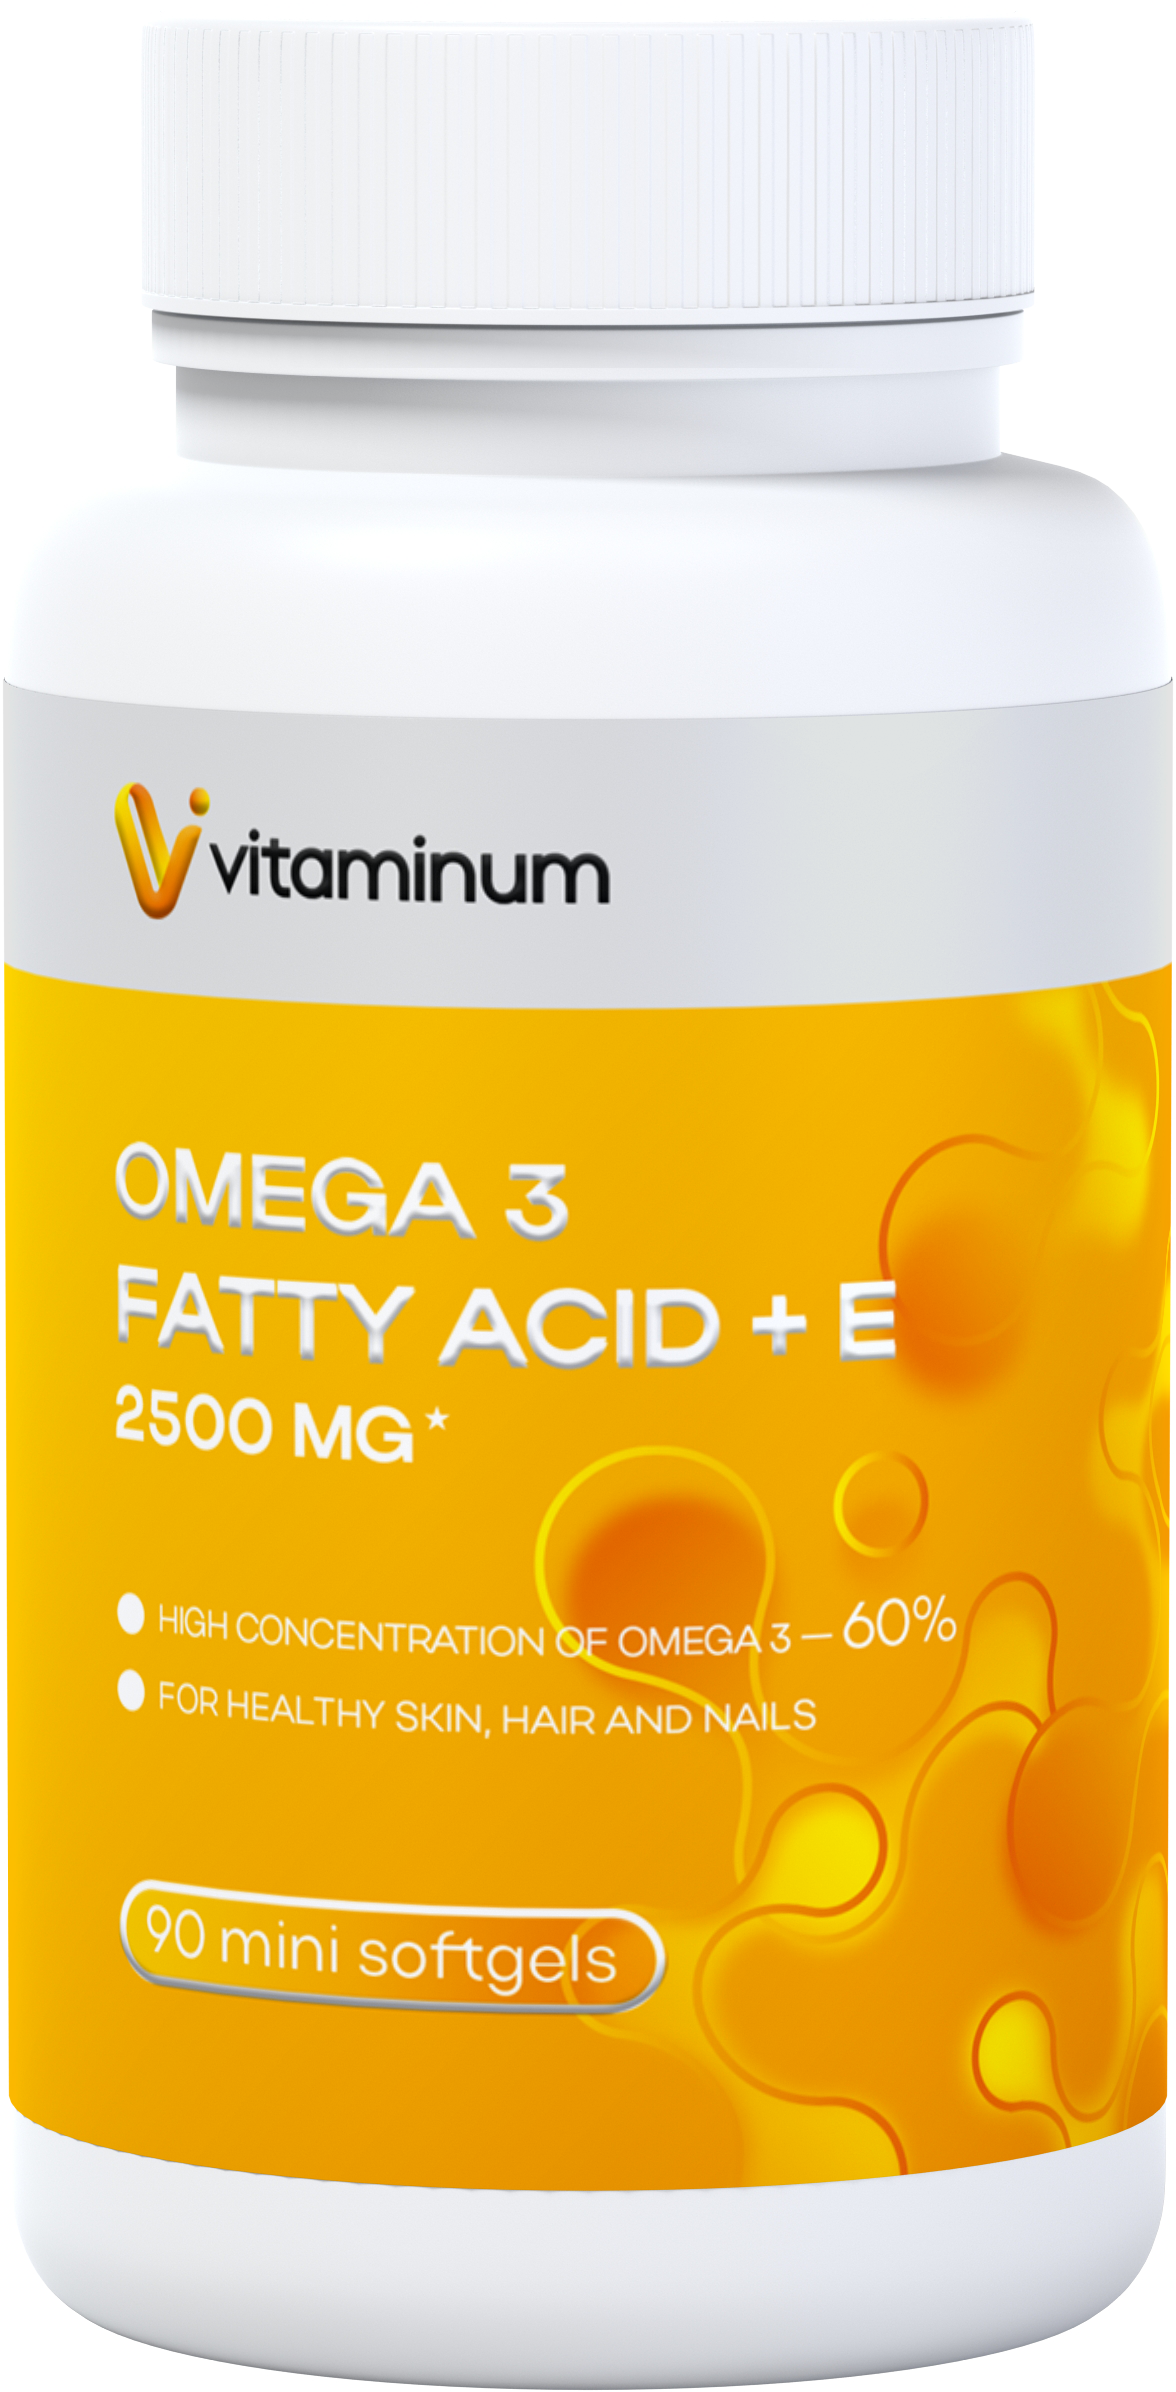  Vitaminum ОМЕГА 3 60% + витамин Е (2500 MG*) 90 капсул 700 мг   в Гатчине